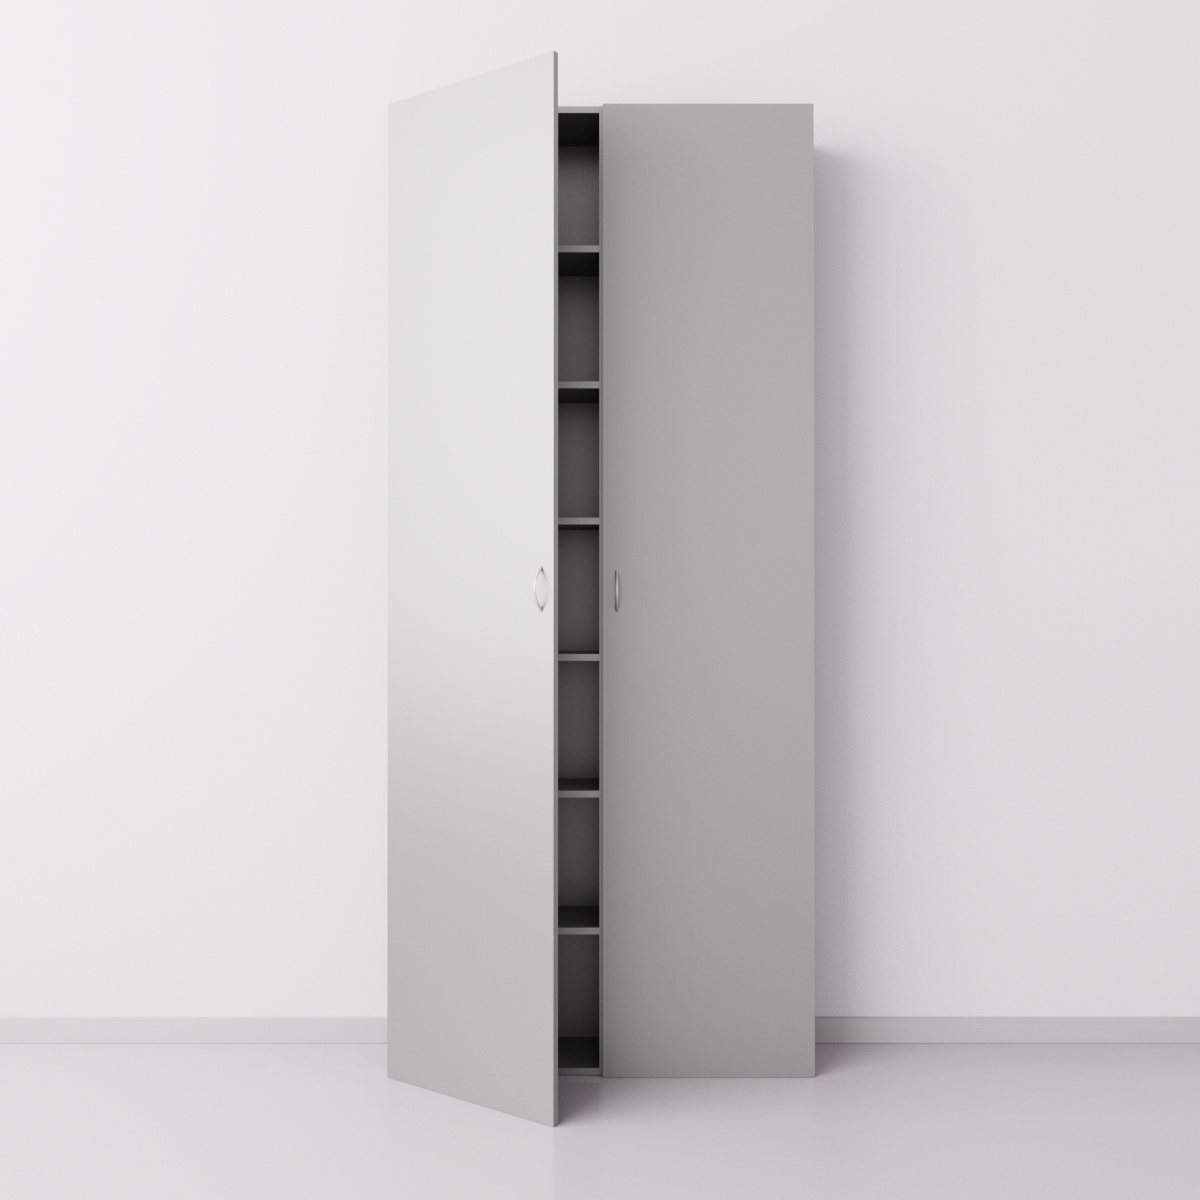 Высокий шкаф с двумя большими дверцами из ДСП, серебристый металлик